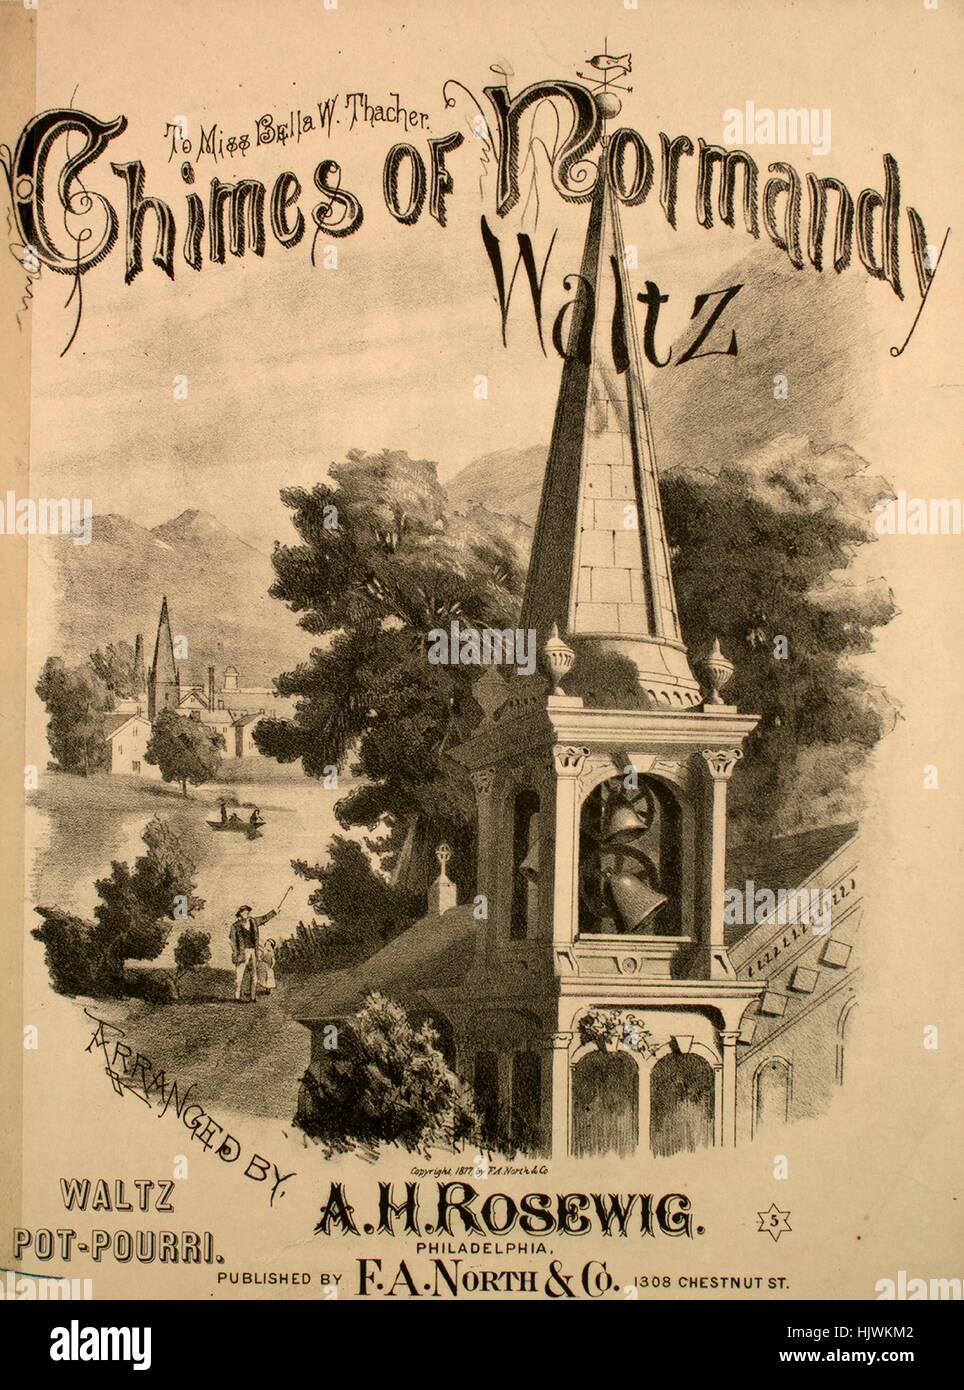 Sheet Music image de couverture de la chanson 'Cloches de Corneville Waltz'  pot-pourri, avec des notes d'auteur original 'lecture organisé par Rosewig  AH', United States, 1877. L'éditeur est répertorié comme "F.A. Nord